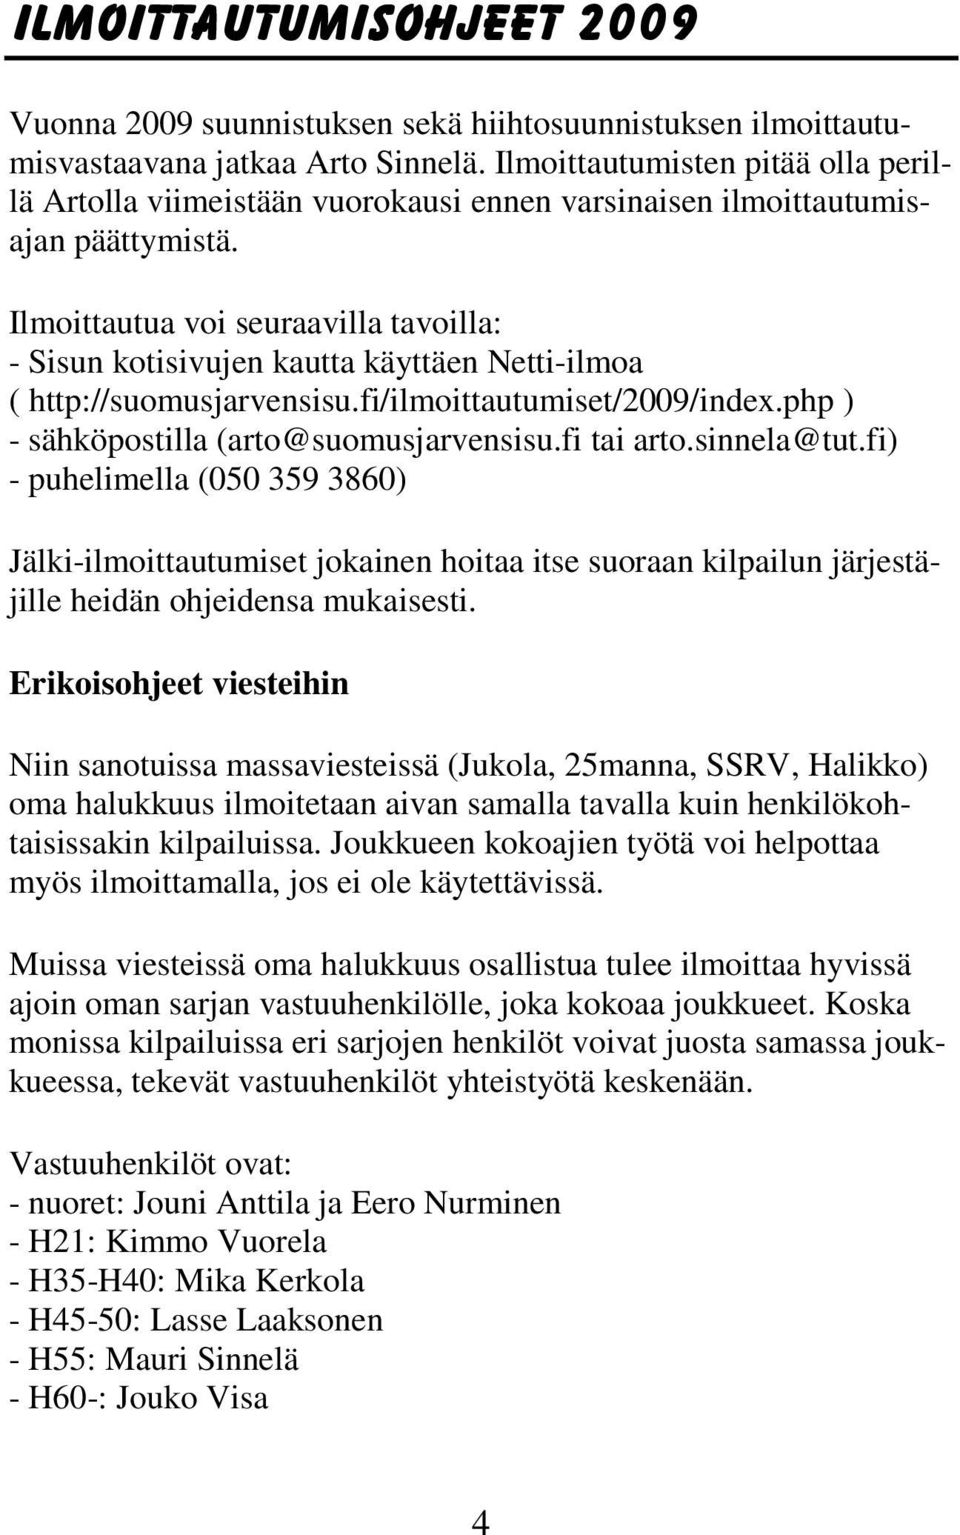 Ilmoittautua voi seuraavilla tavoilla: - Sisun kotisivujen kautta käyttäen Netti-ilmoa ( http://suomusjarvensisu.fi/ilmoittautumiset/2009/index.php ) - sähköpostilla (arto@suomusjarvensisu.